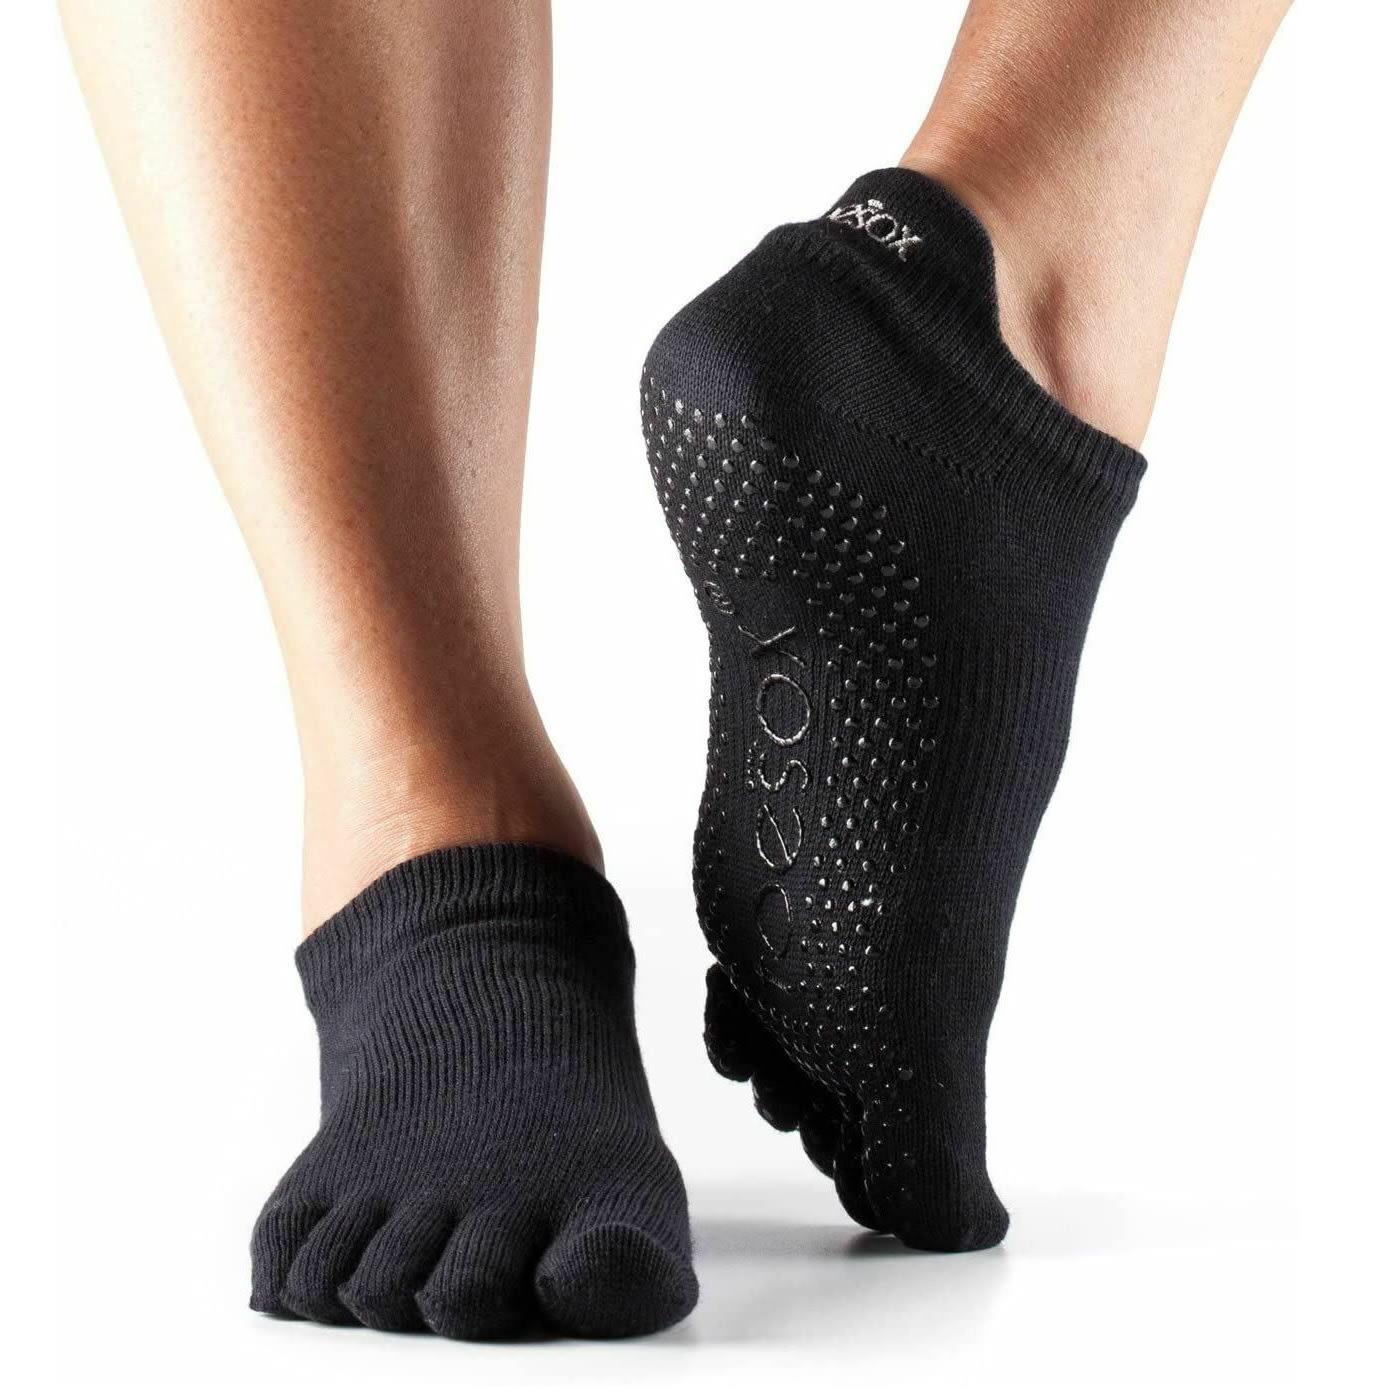 FITNESS-MAD Unisex Adult Low Rise Toe Socks (Black)